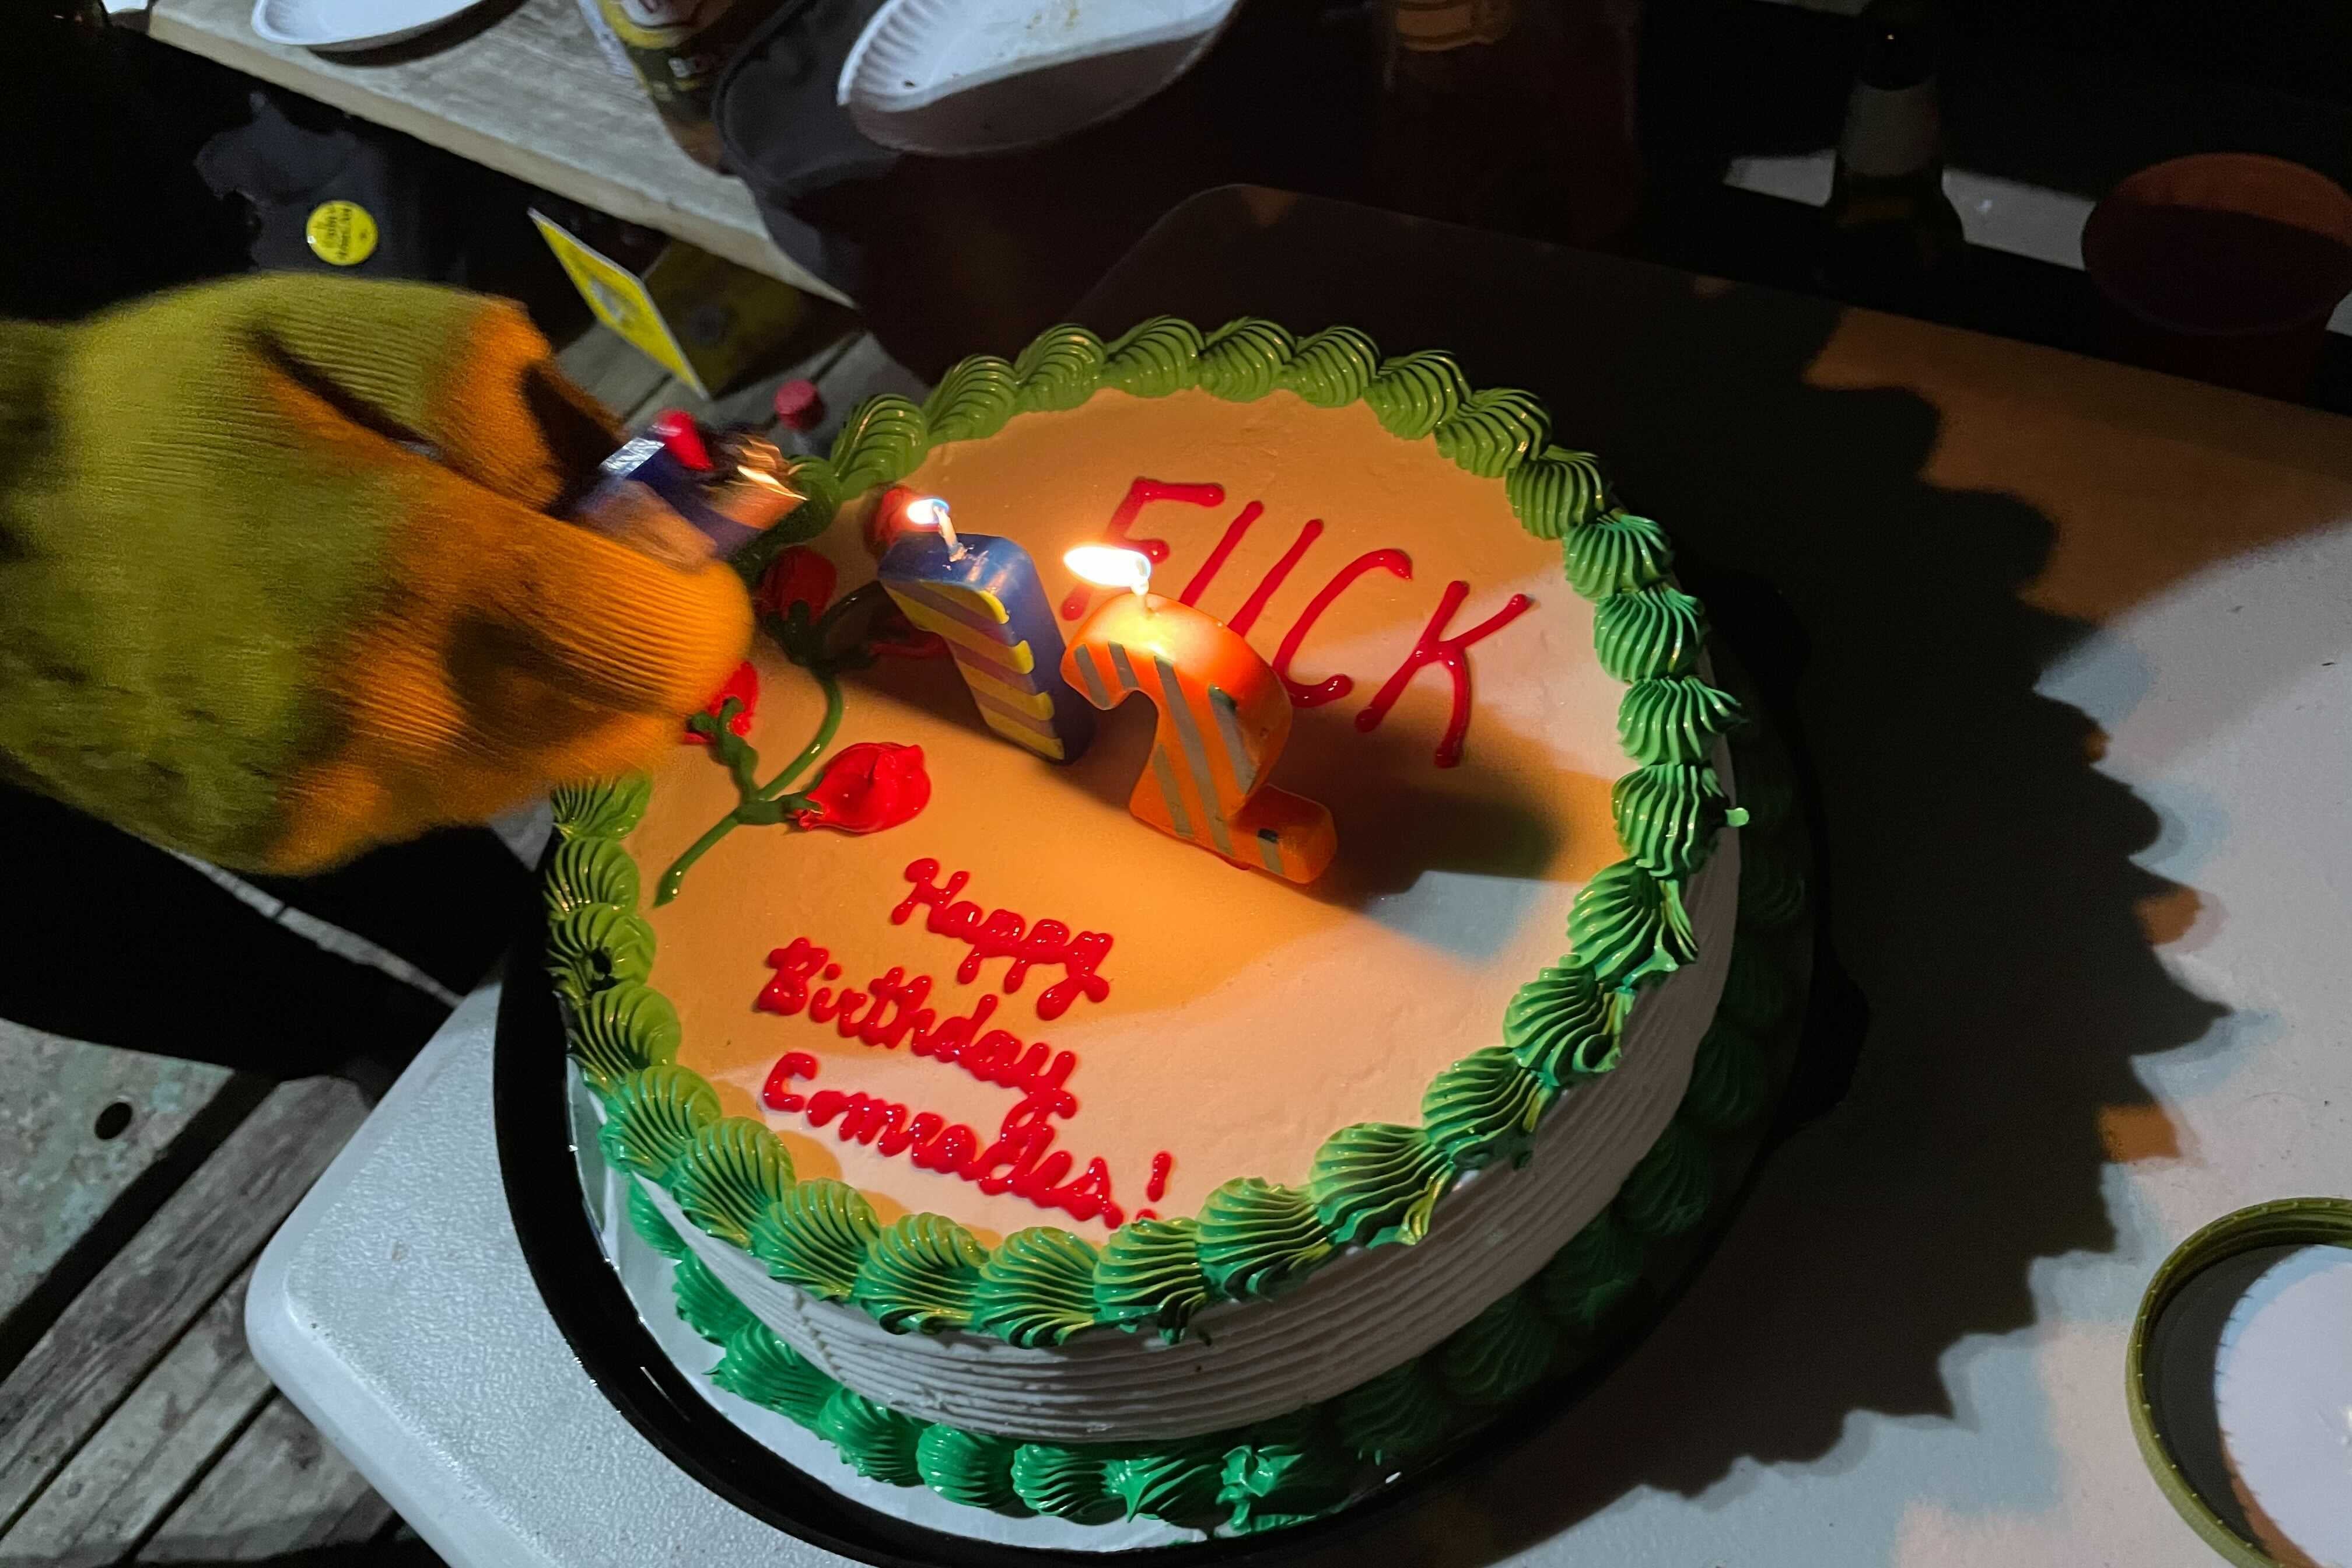 A birthday cake reads "Fuck 12. Happy birthday, comrades." 